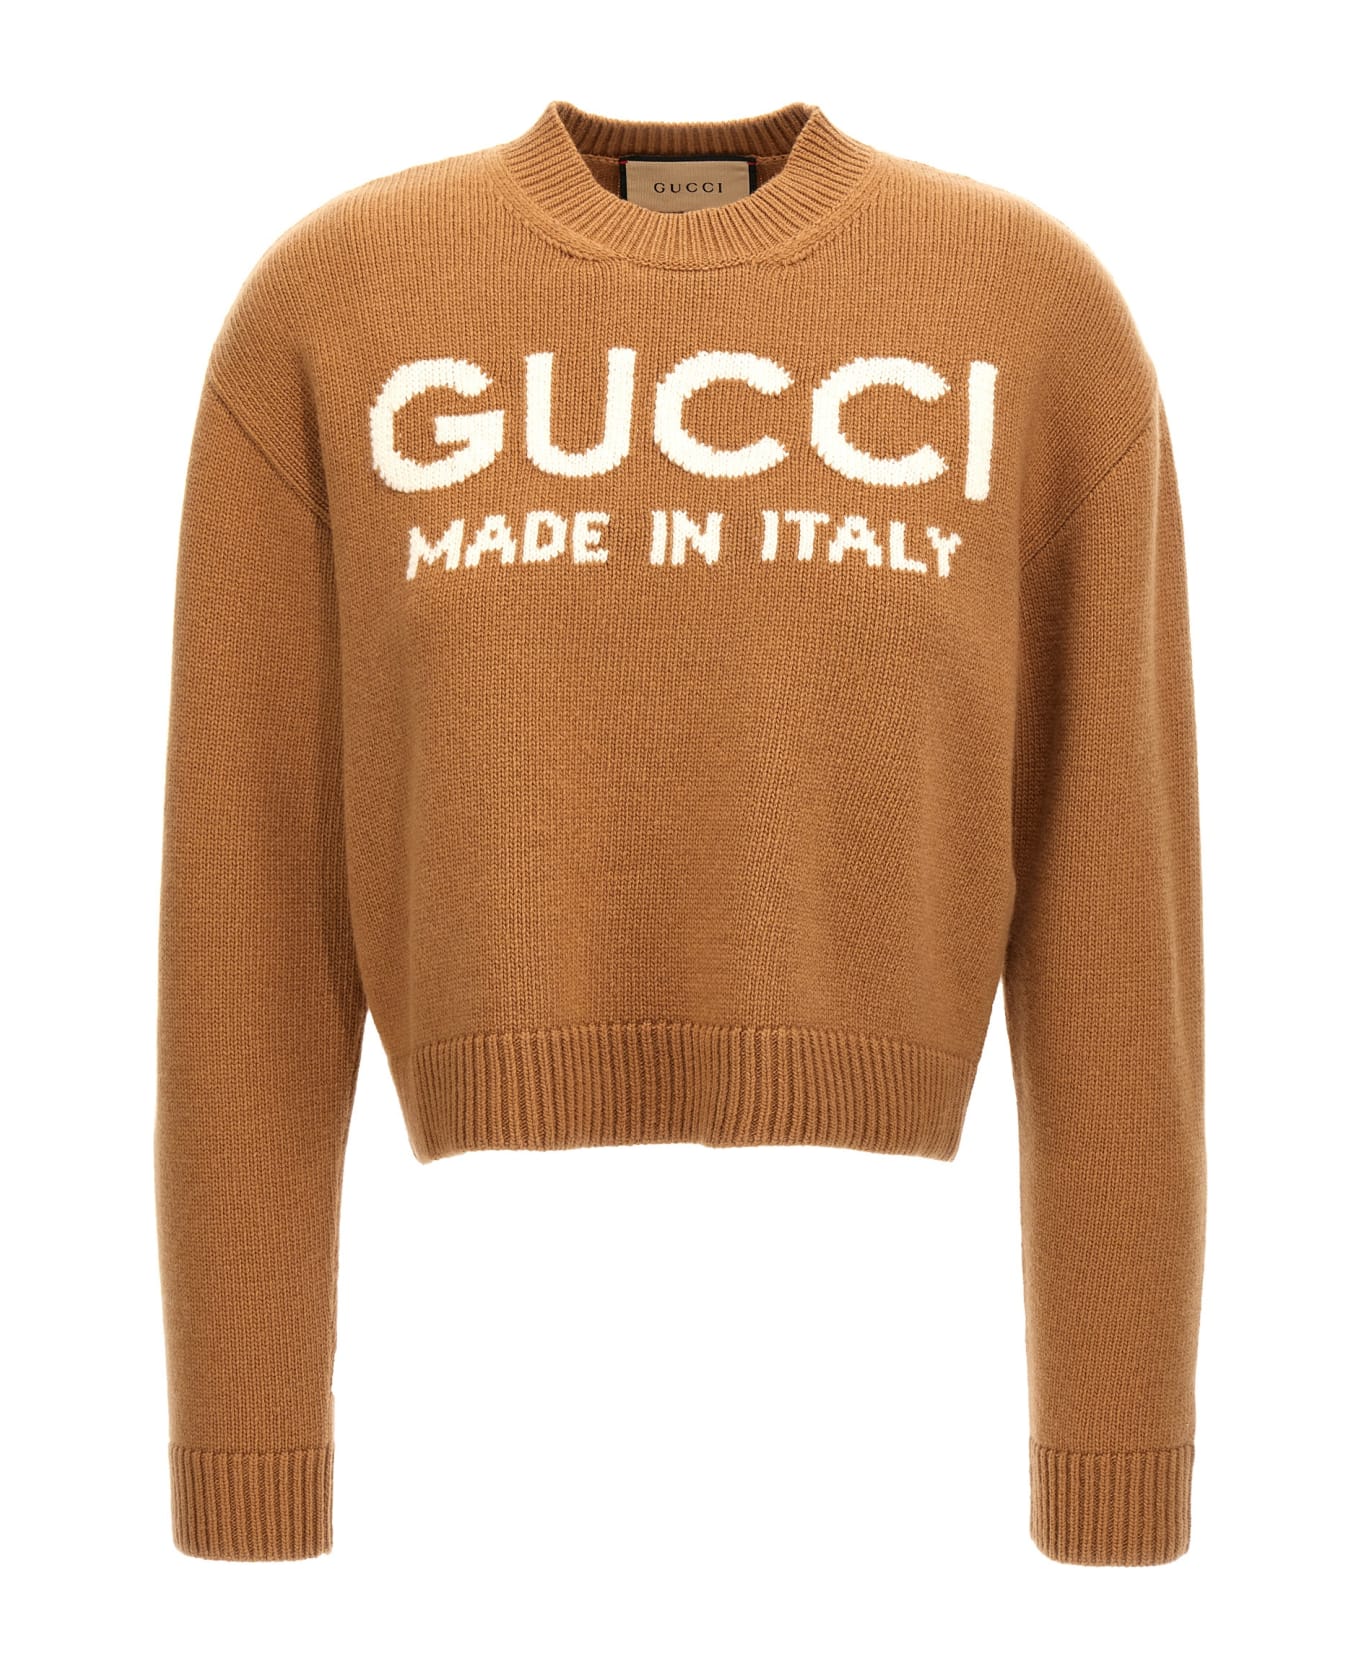 Gucci Jacquard Logo Sweater - Beige